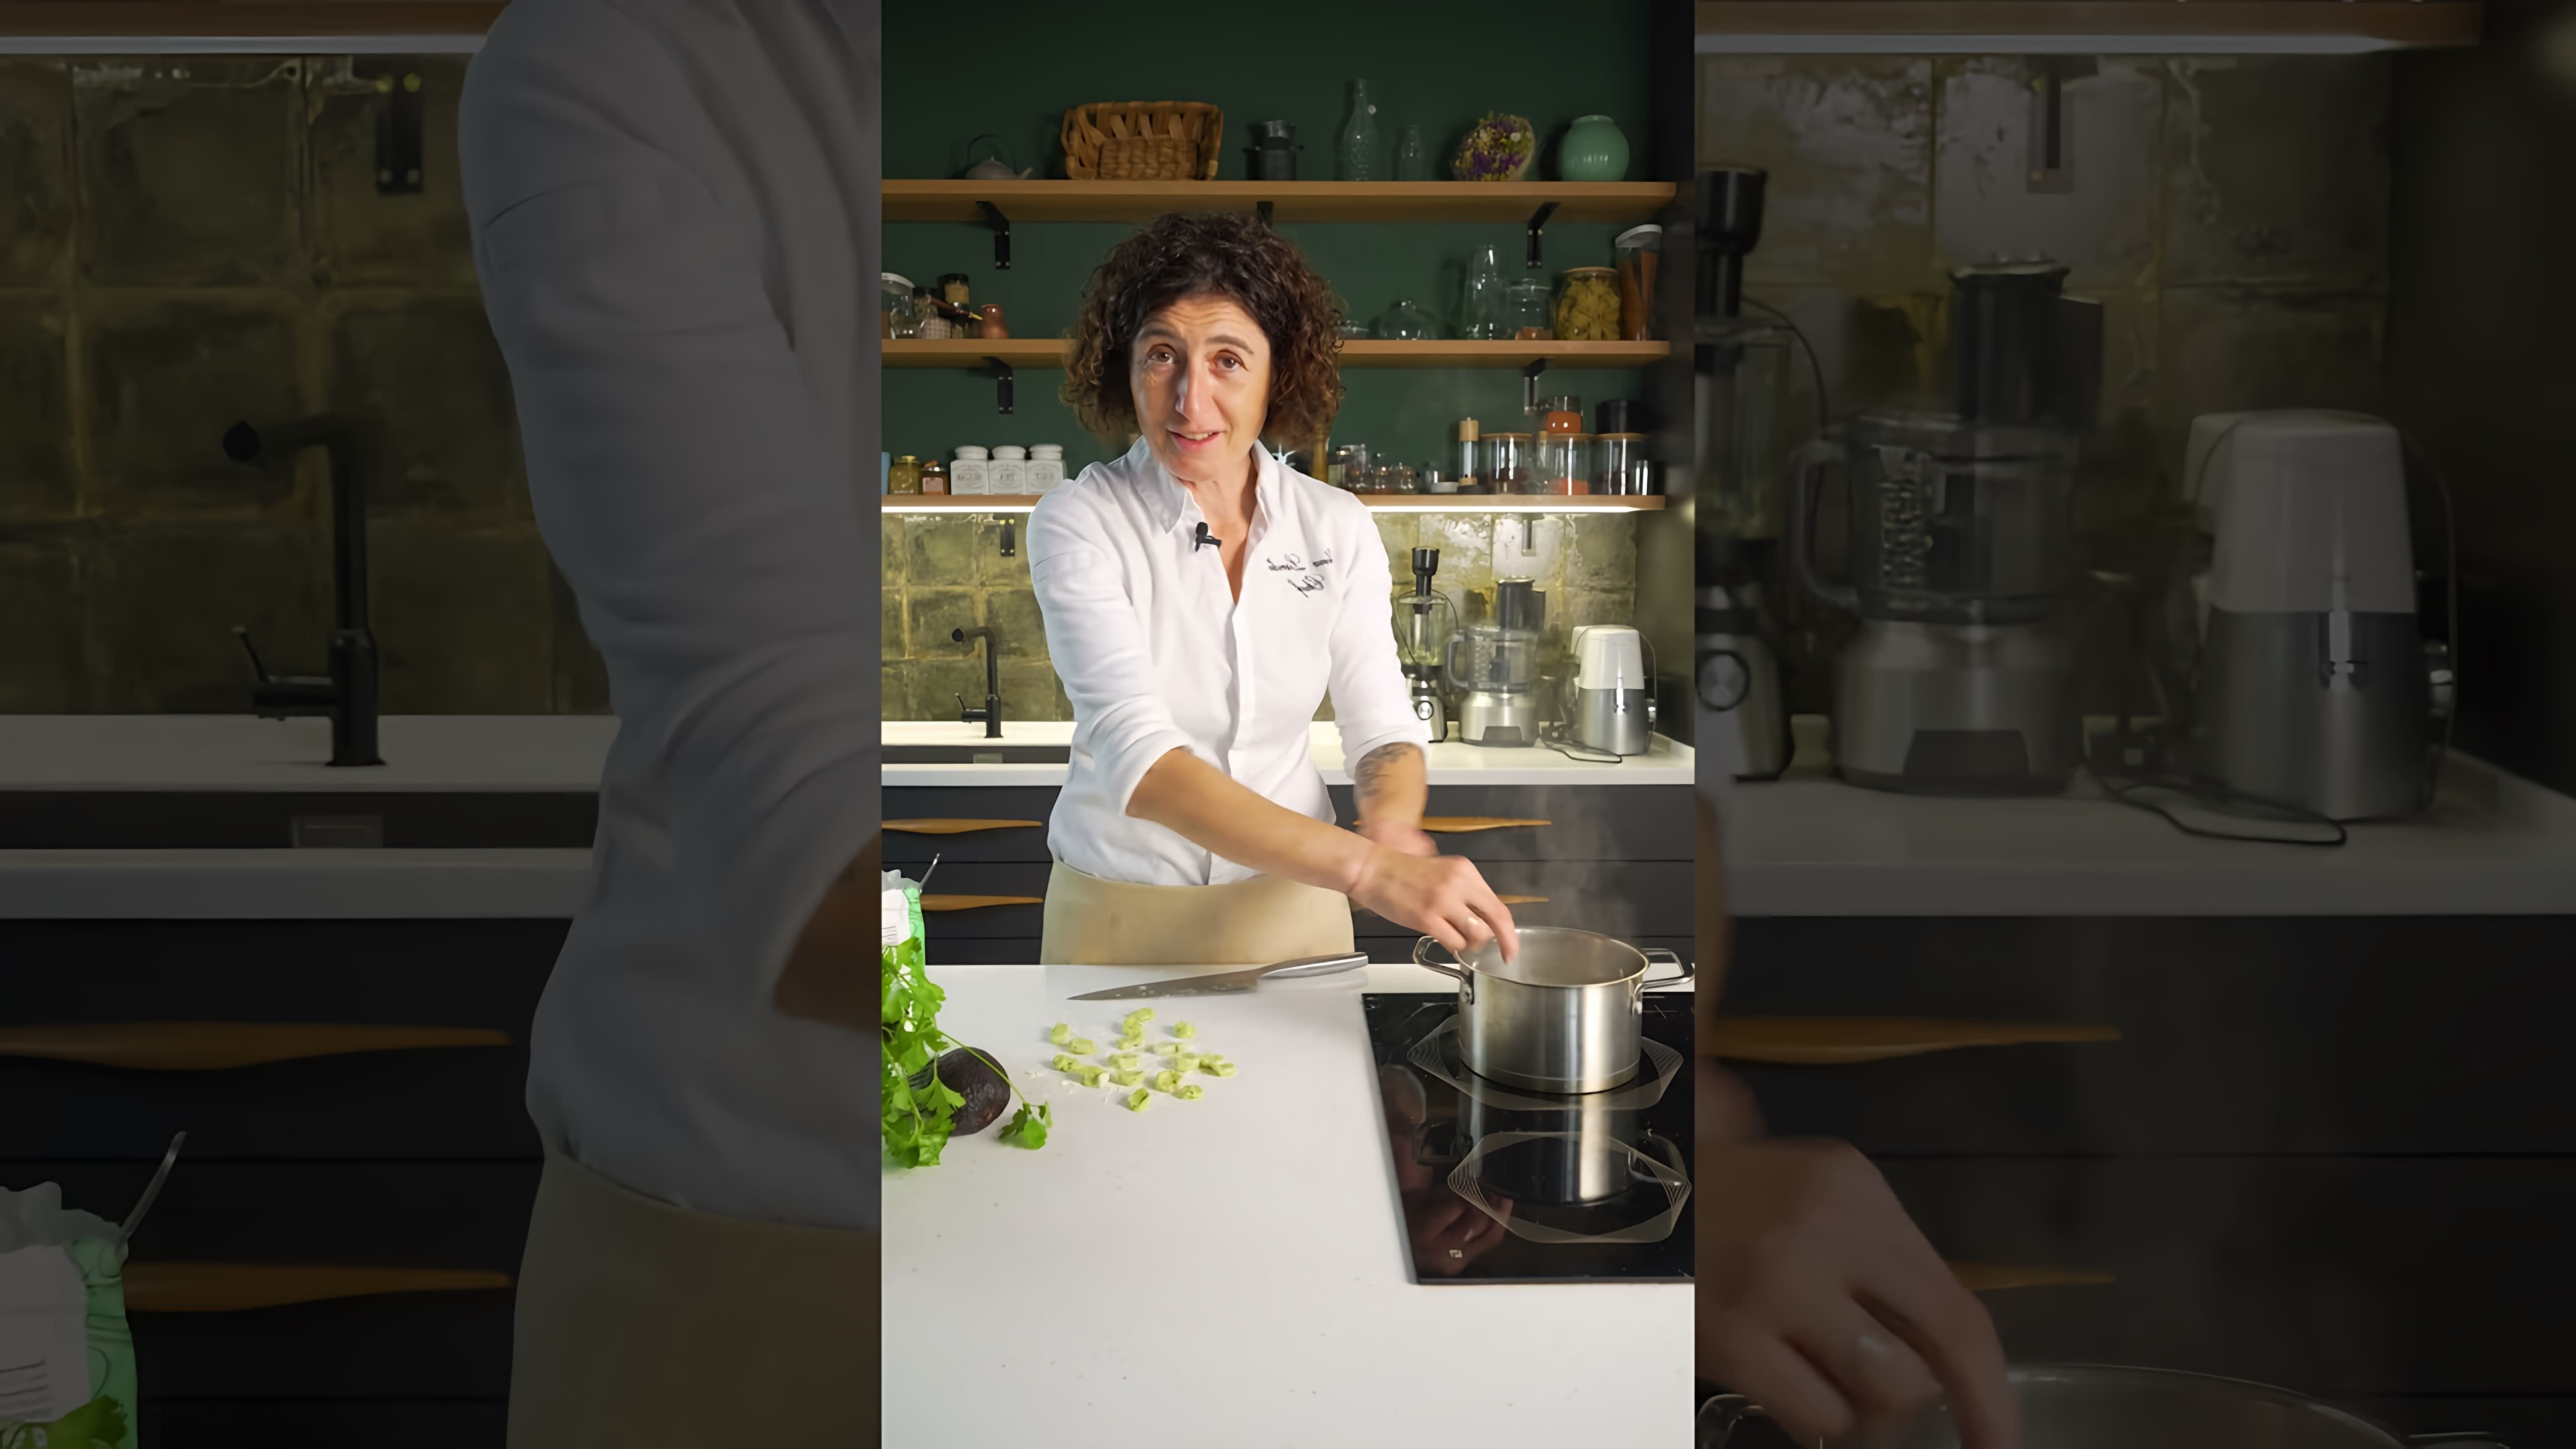 В этом видео демонстрируется процесс приготовления авокадо пасты по рецепту из интернета